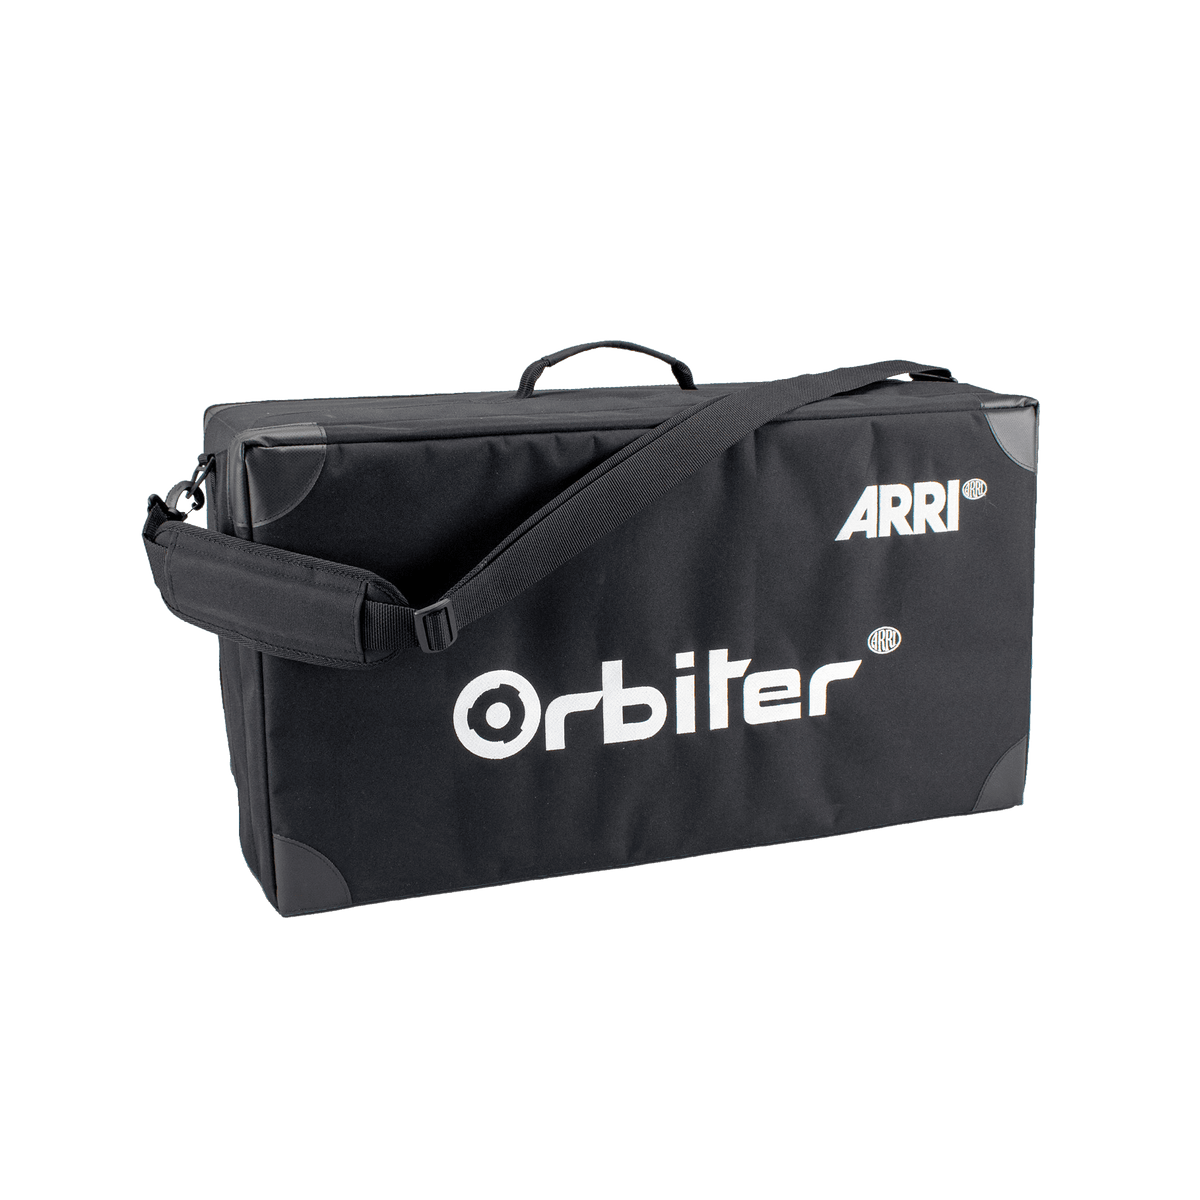 ARRI Orbiter Bag for Optics